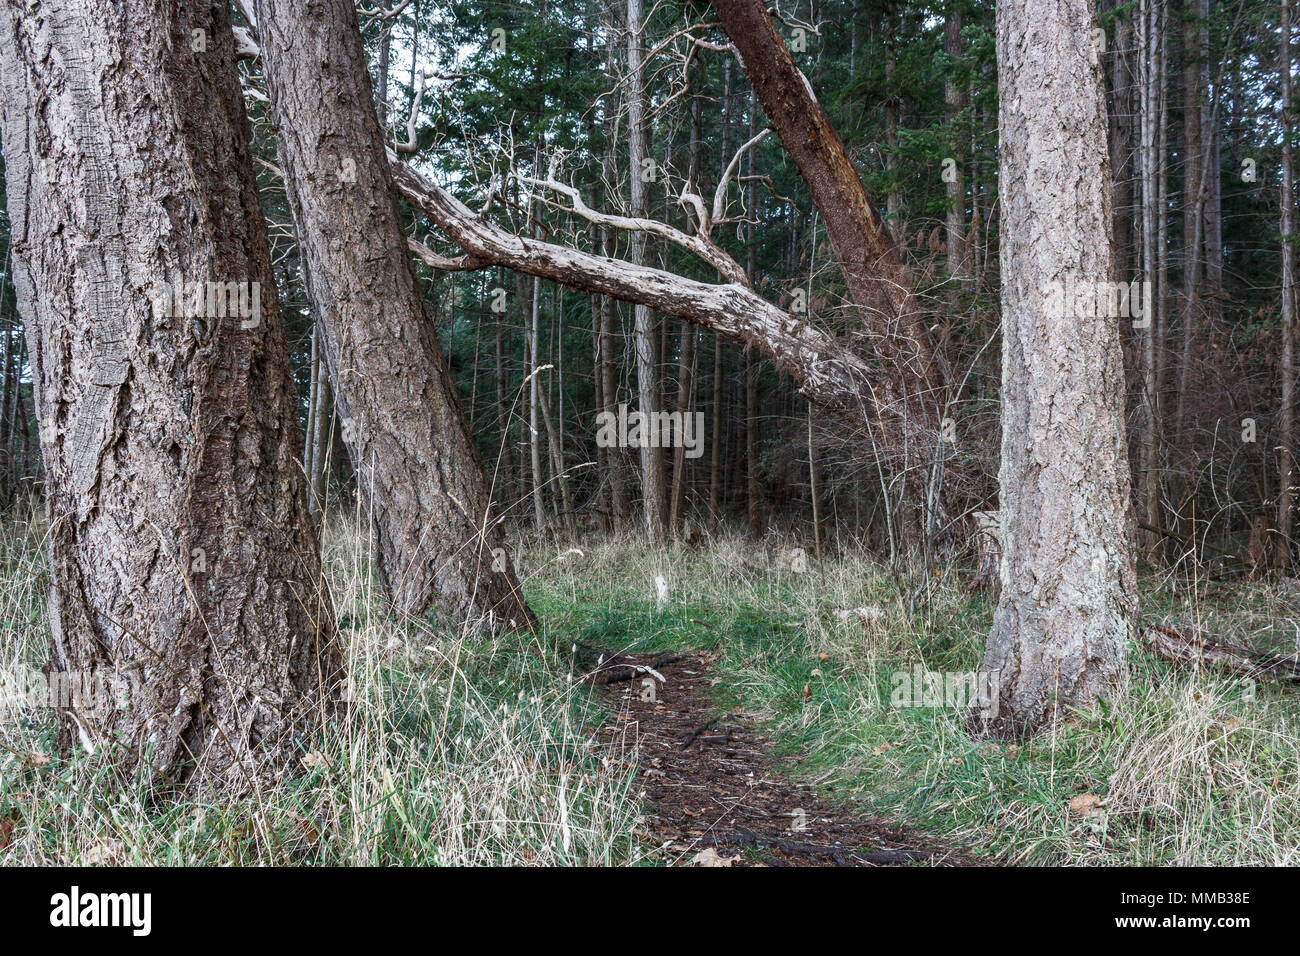 Douglas firs stand su entrambi i lati di un sentiero a piedi in un parco forestale e un albero di corbezzolo (Pacific madrone) si appoggia attraverso il percorso (British Columbia). Foto Stock